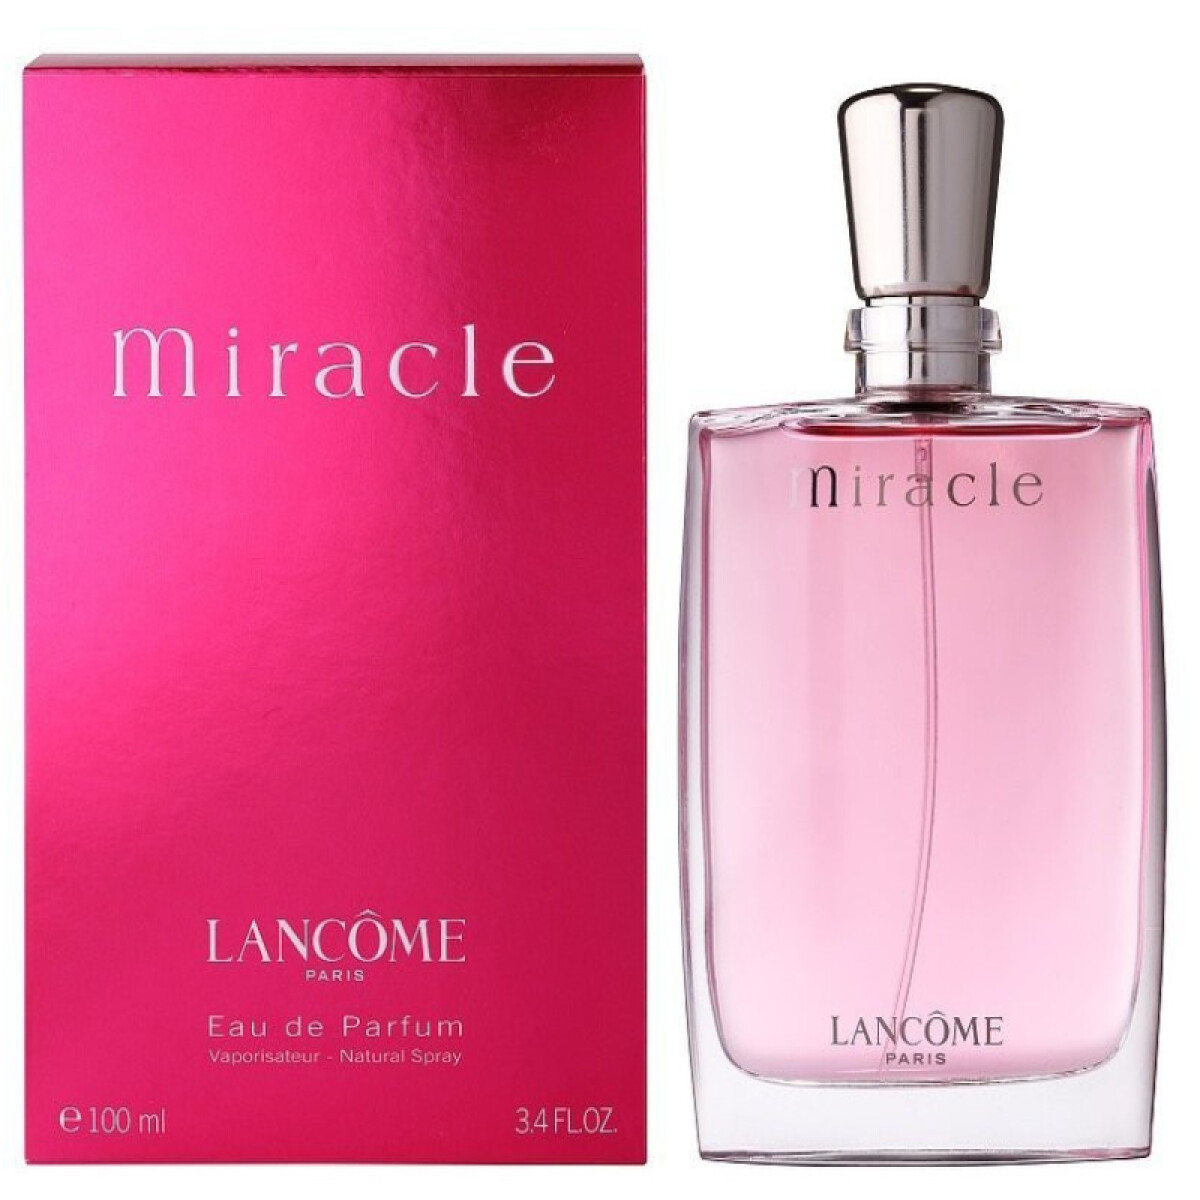 Miracle eau de parfum Lancome - 100 ml 